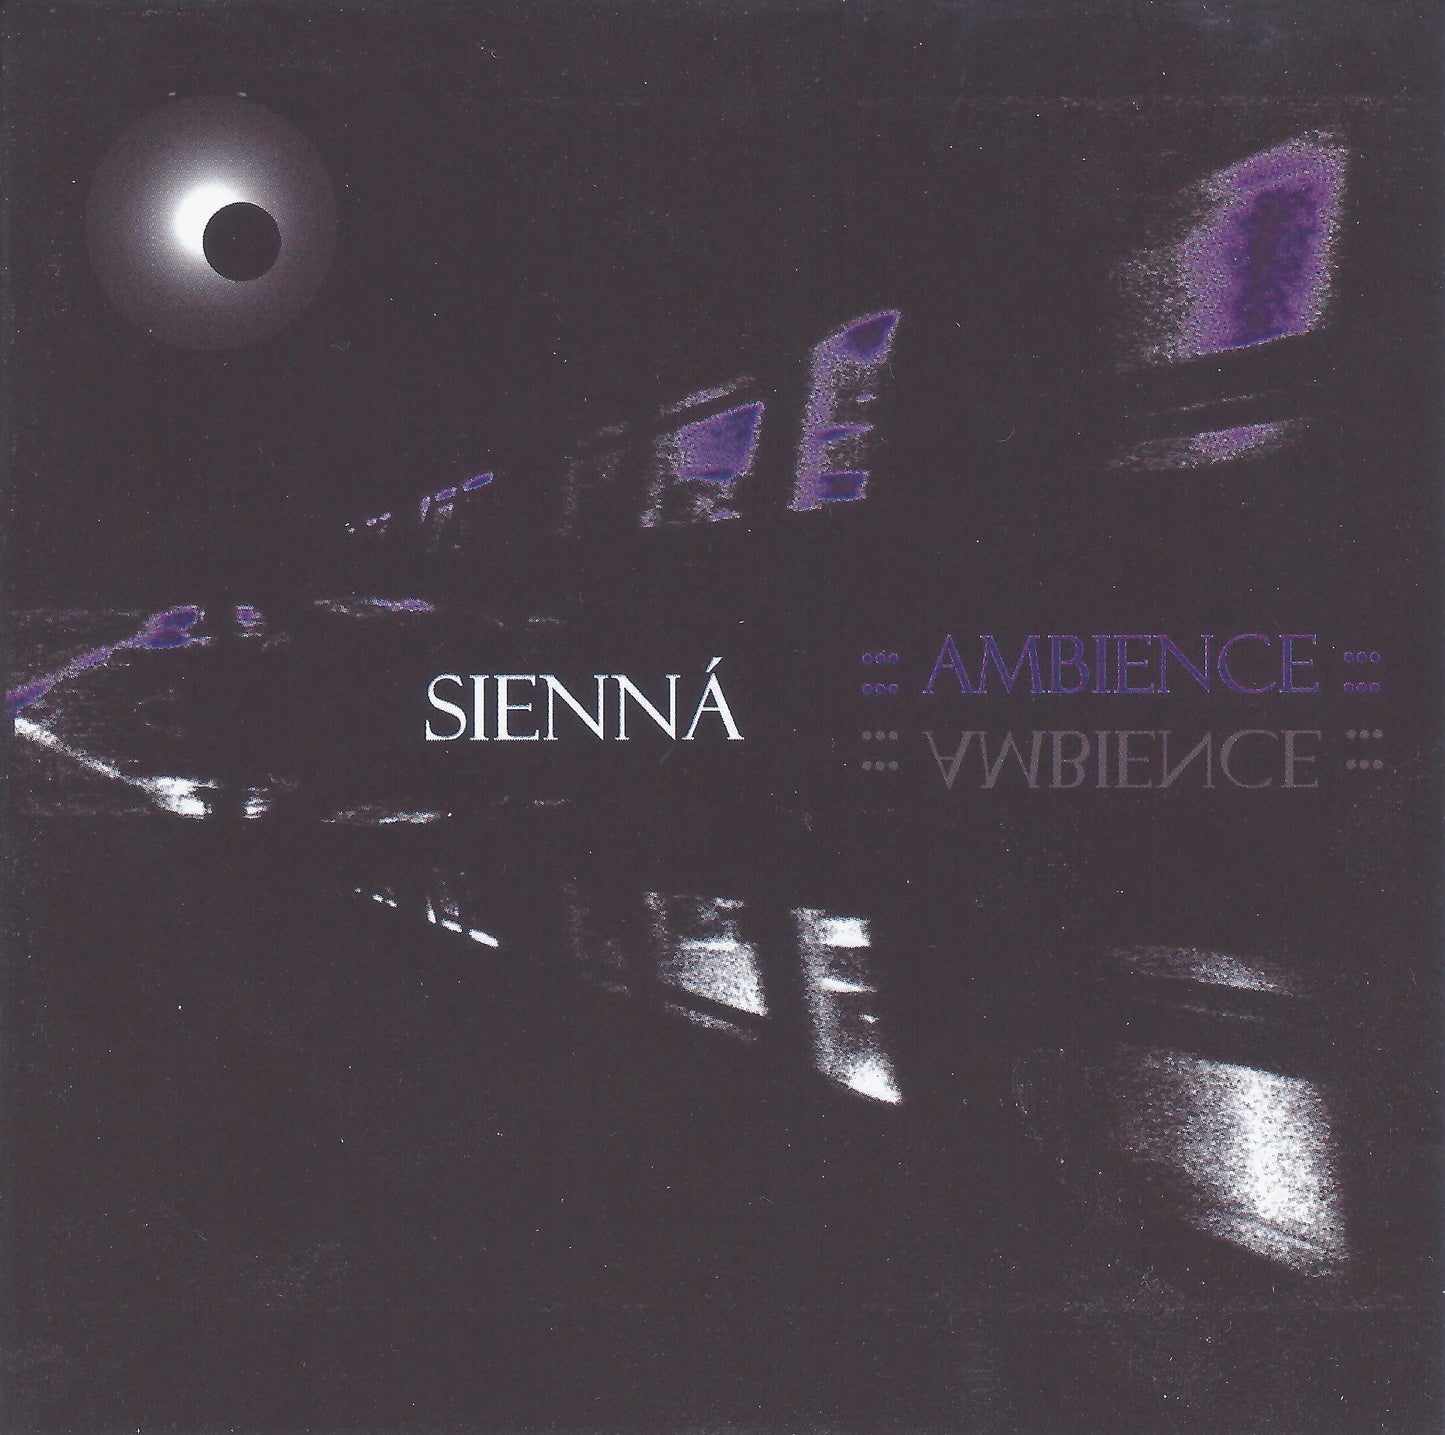 Sienná - Ambience CD